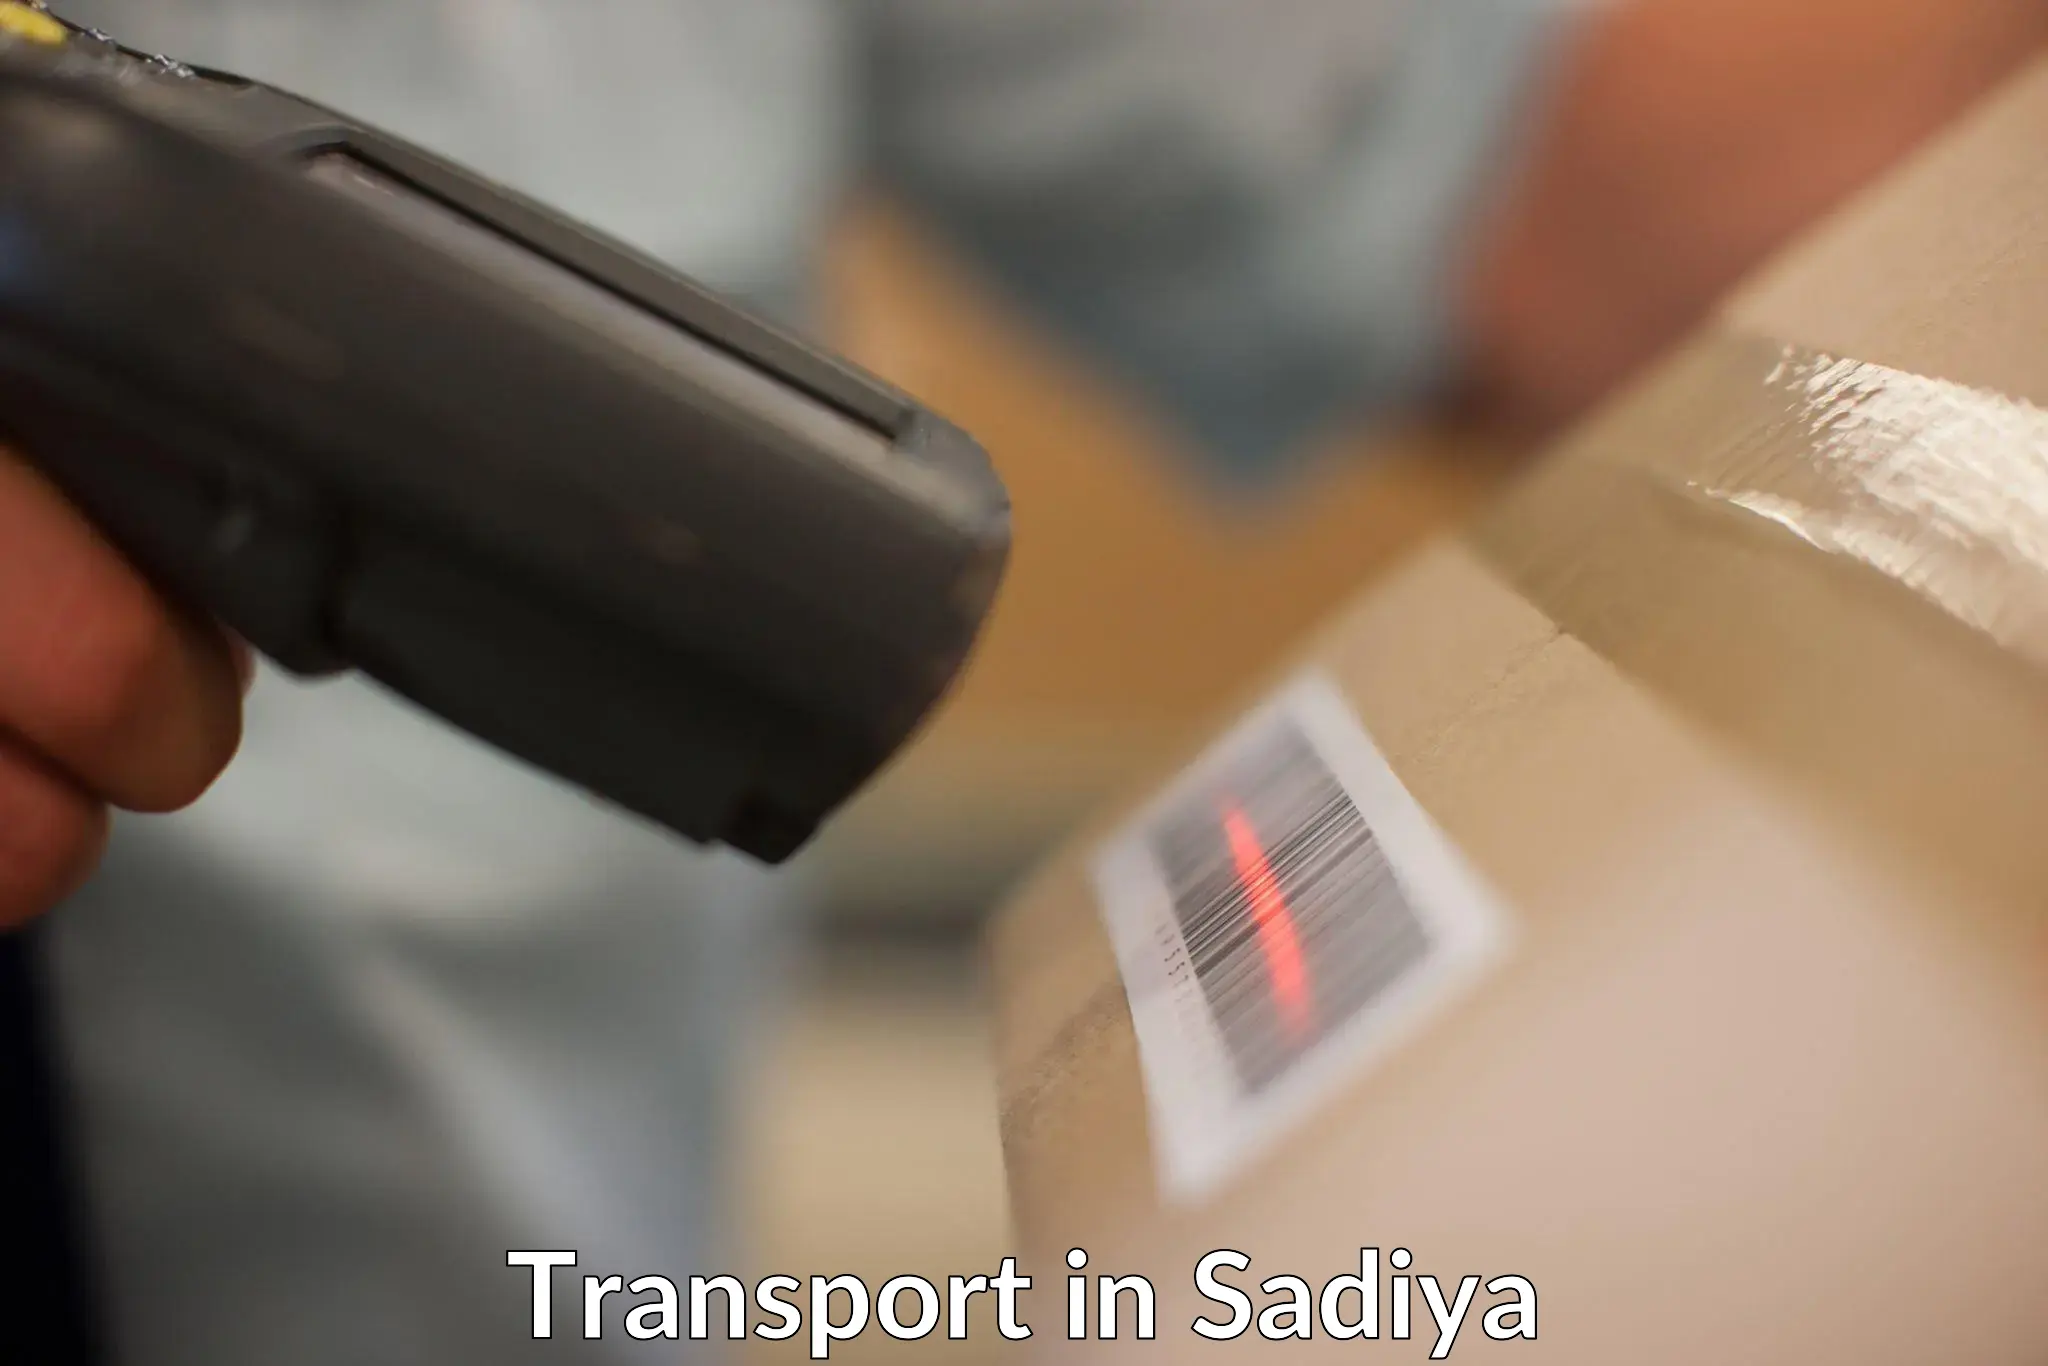 Transportation solution services in Sadiya